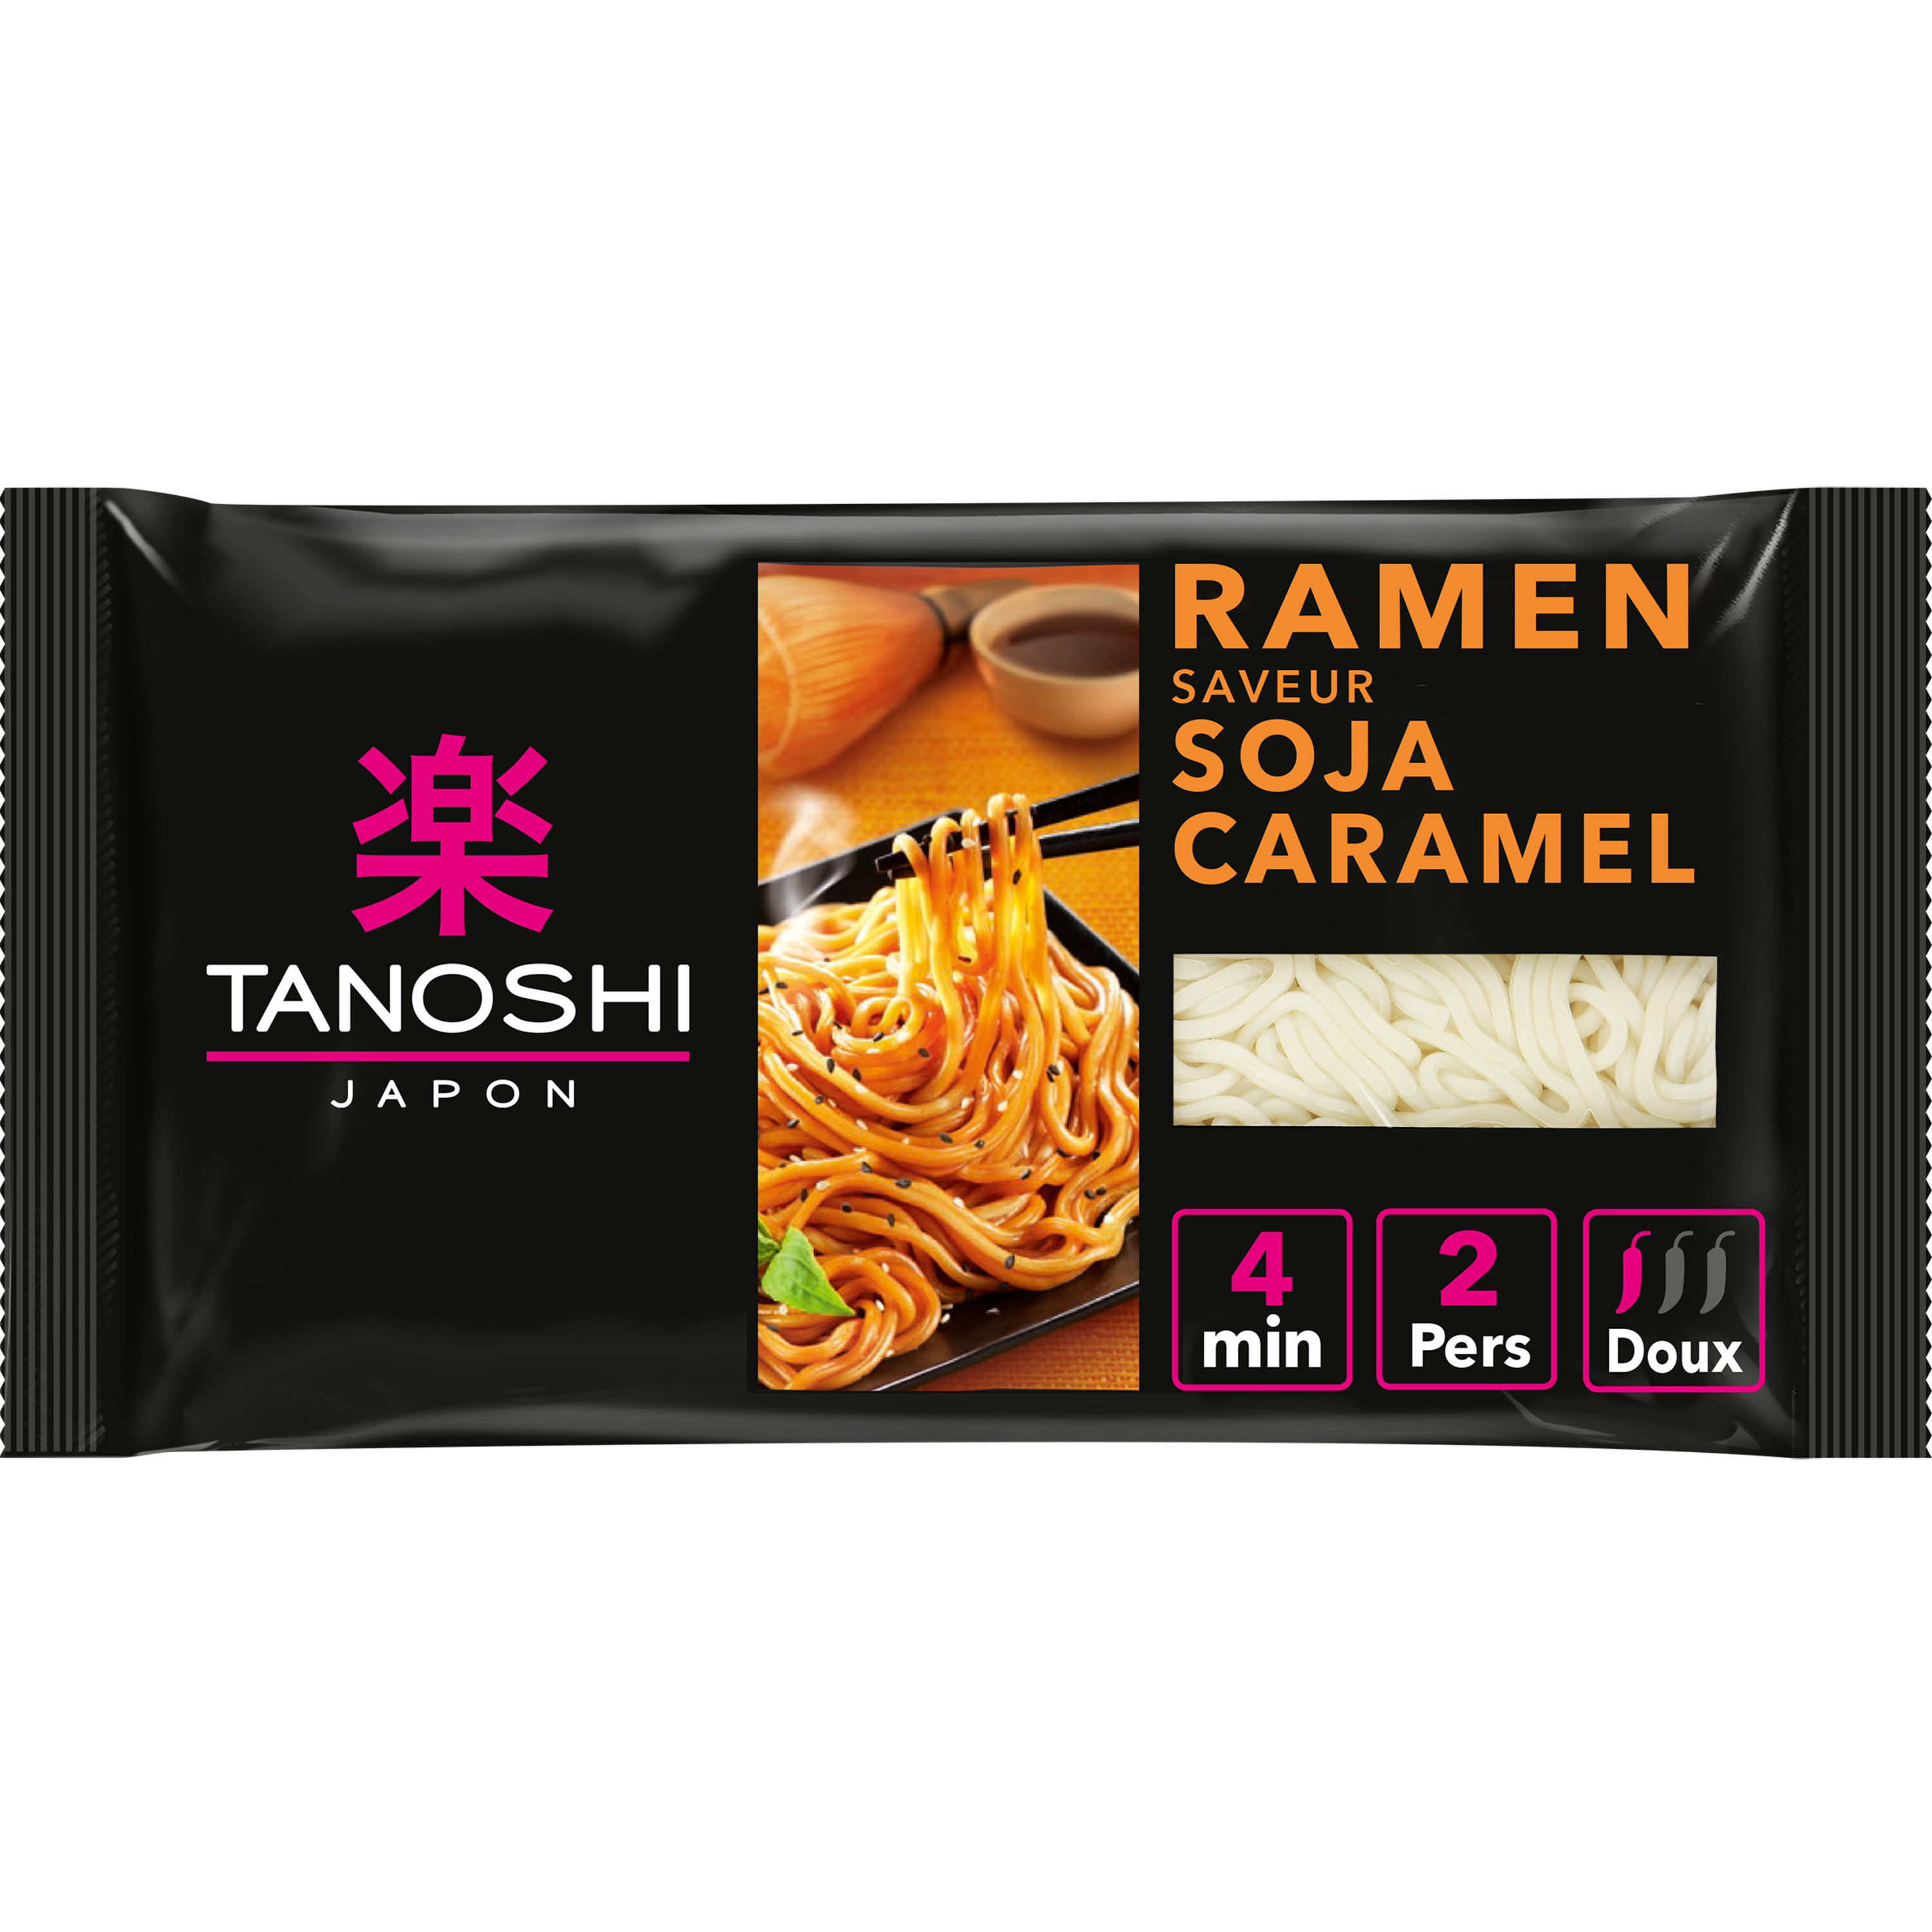 TANOSHI Ramen nouilles asiatiques précuites saveur soja caramel en sachet 2  personnes 360g pas cher 